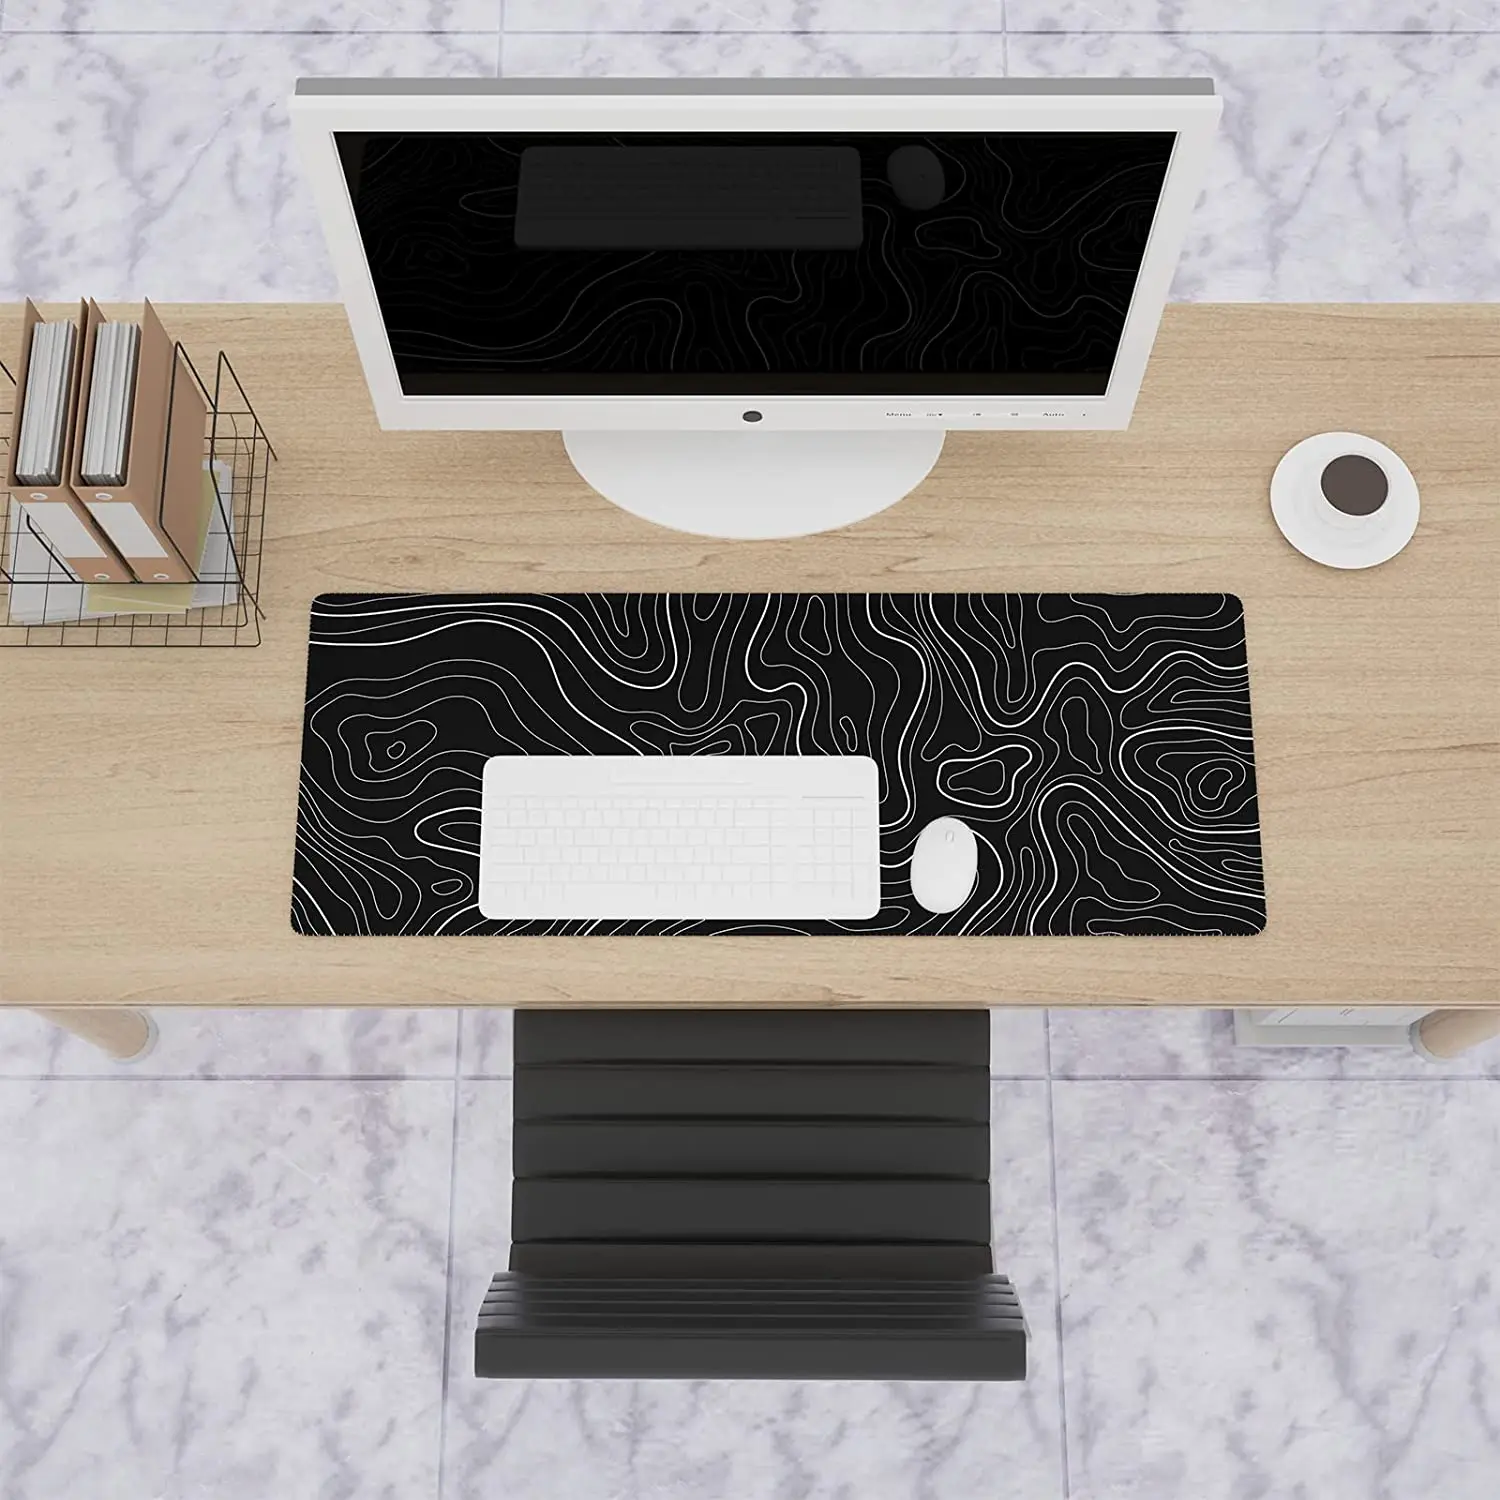 Черный удлиненный игровой коврик для компьютерной мыши, большой игровой коврик для мыши для стола, Минималистичный настольный коврик, классный настольный коврик для клавиатуры, коврик для мыши Изображение 5